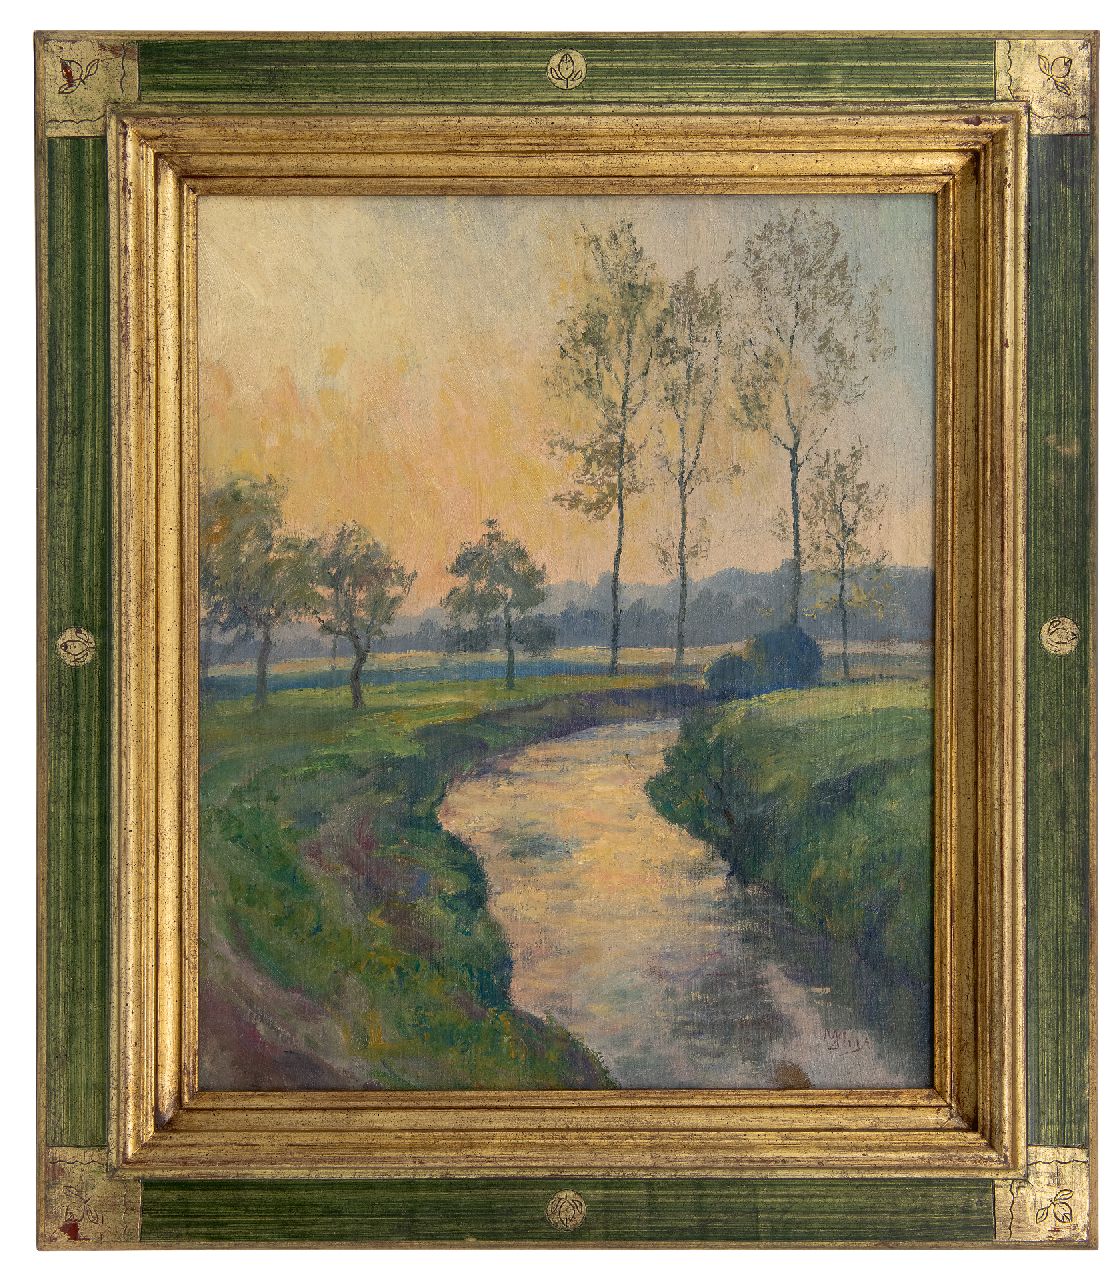 Huys M.  | Modest Huys | Schilderijen te koop aangeboden | Vlaams landschap met beek (vermoedelijk de Mandel of de Leie), olieverf op doek 60,5 x 50,3 cm, gesigneerd rechtsonder